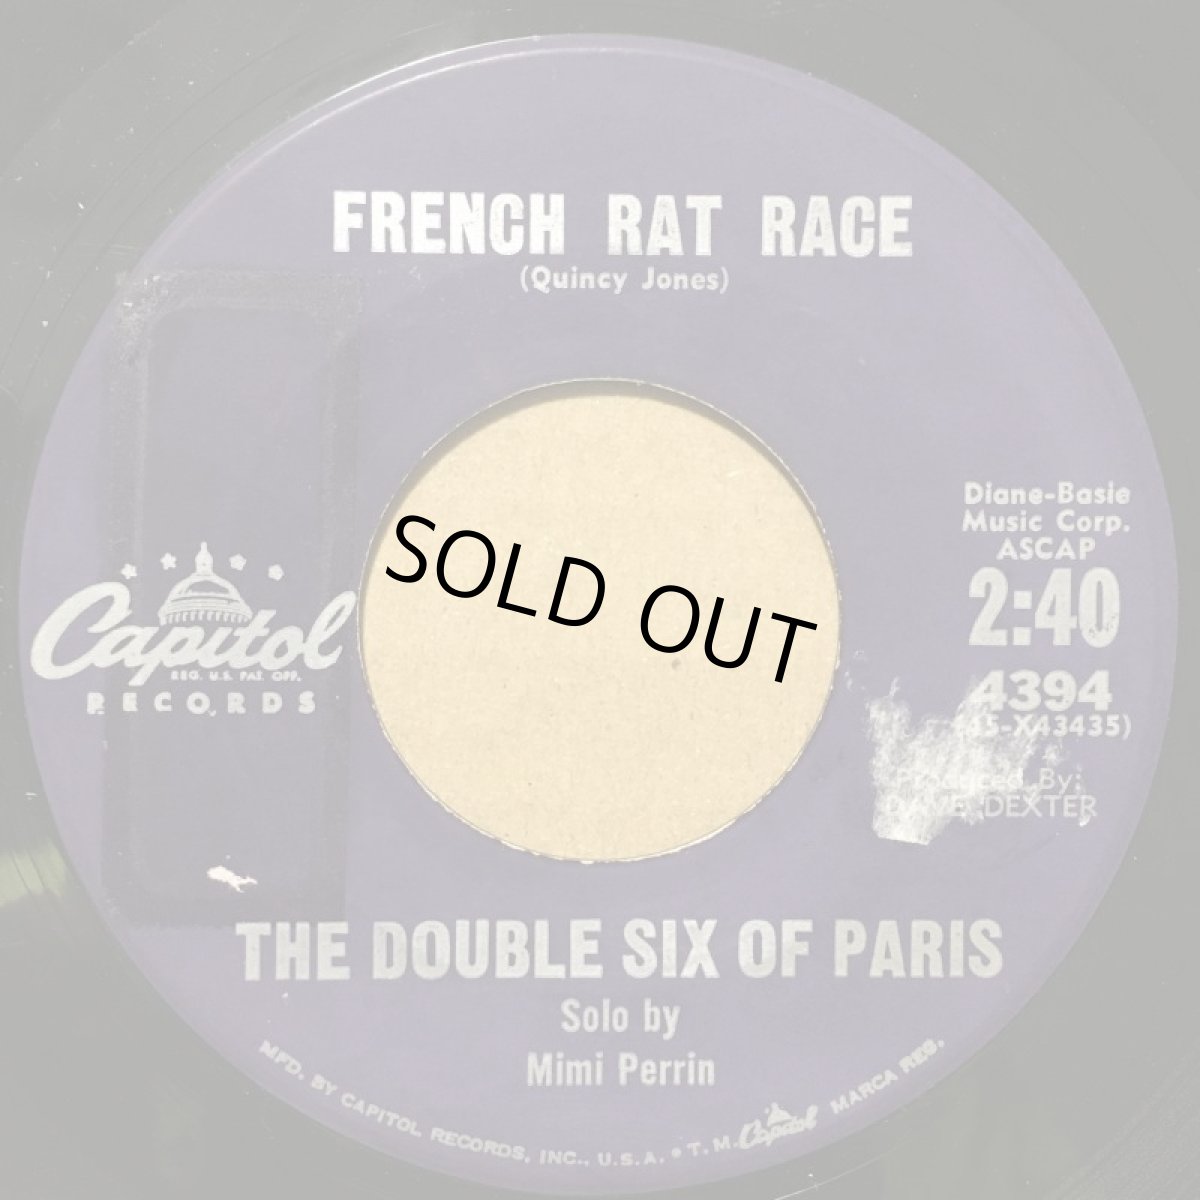 画像1: THE DOUBLE SIX OF PARIS ♪ FRENCH RAT RACE ♪ (1)